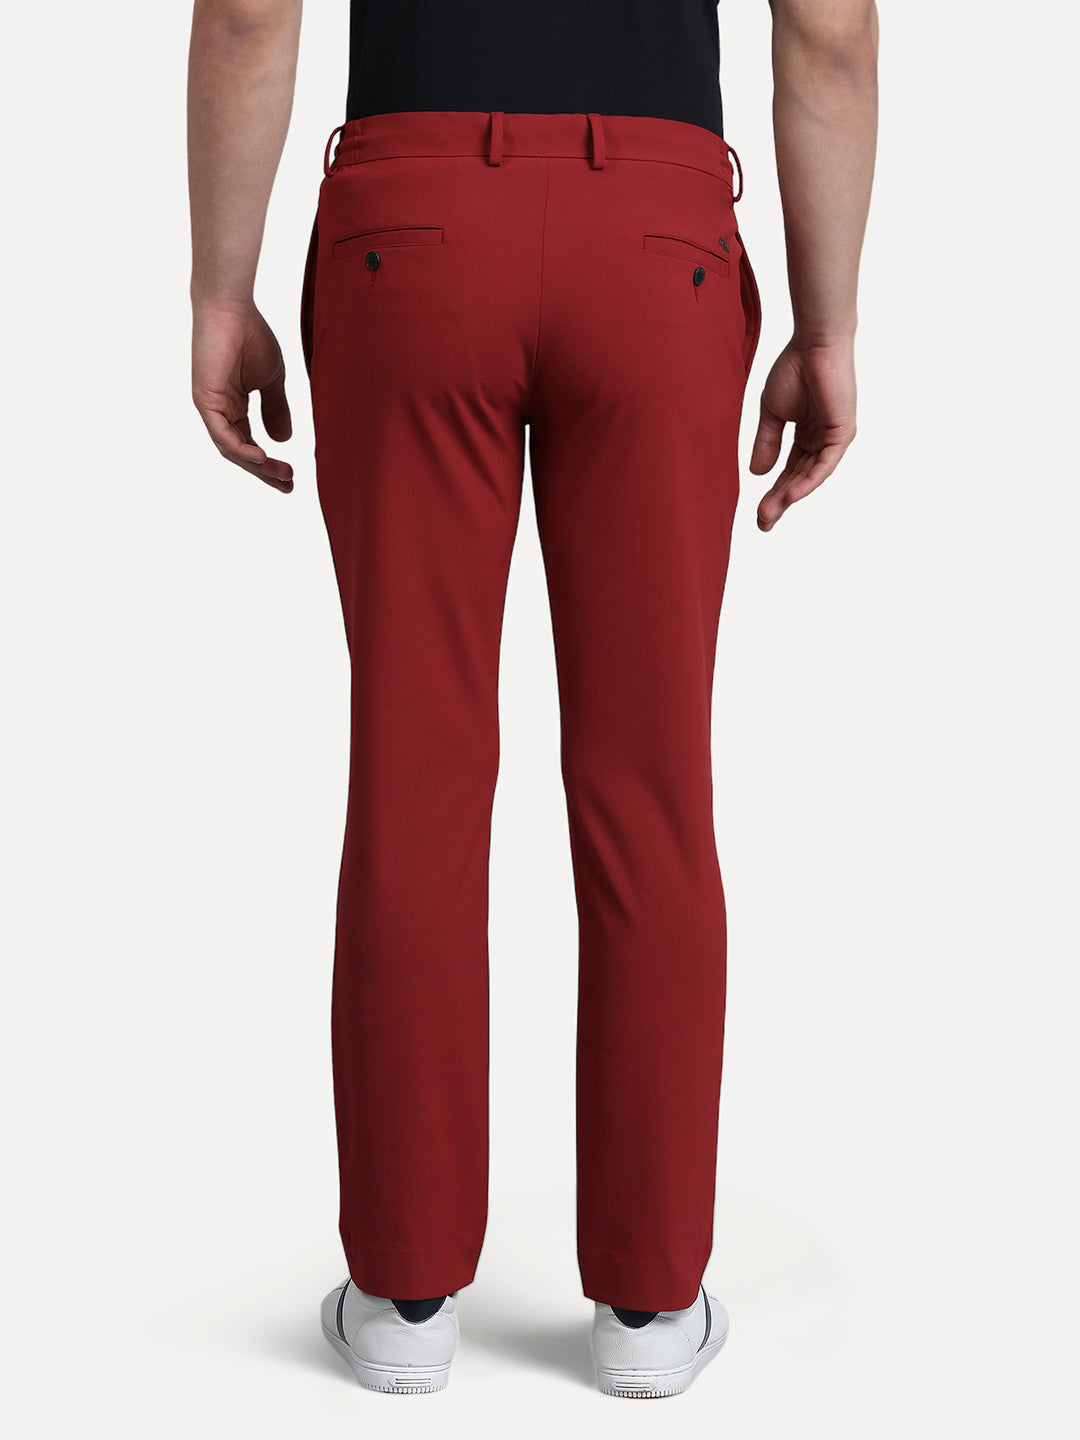 regular red beetroot trouser for men